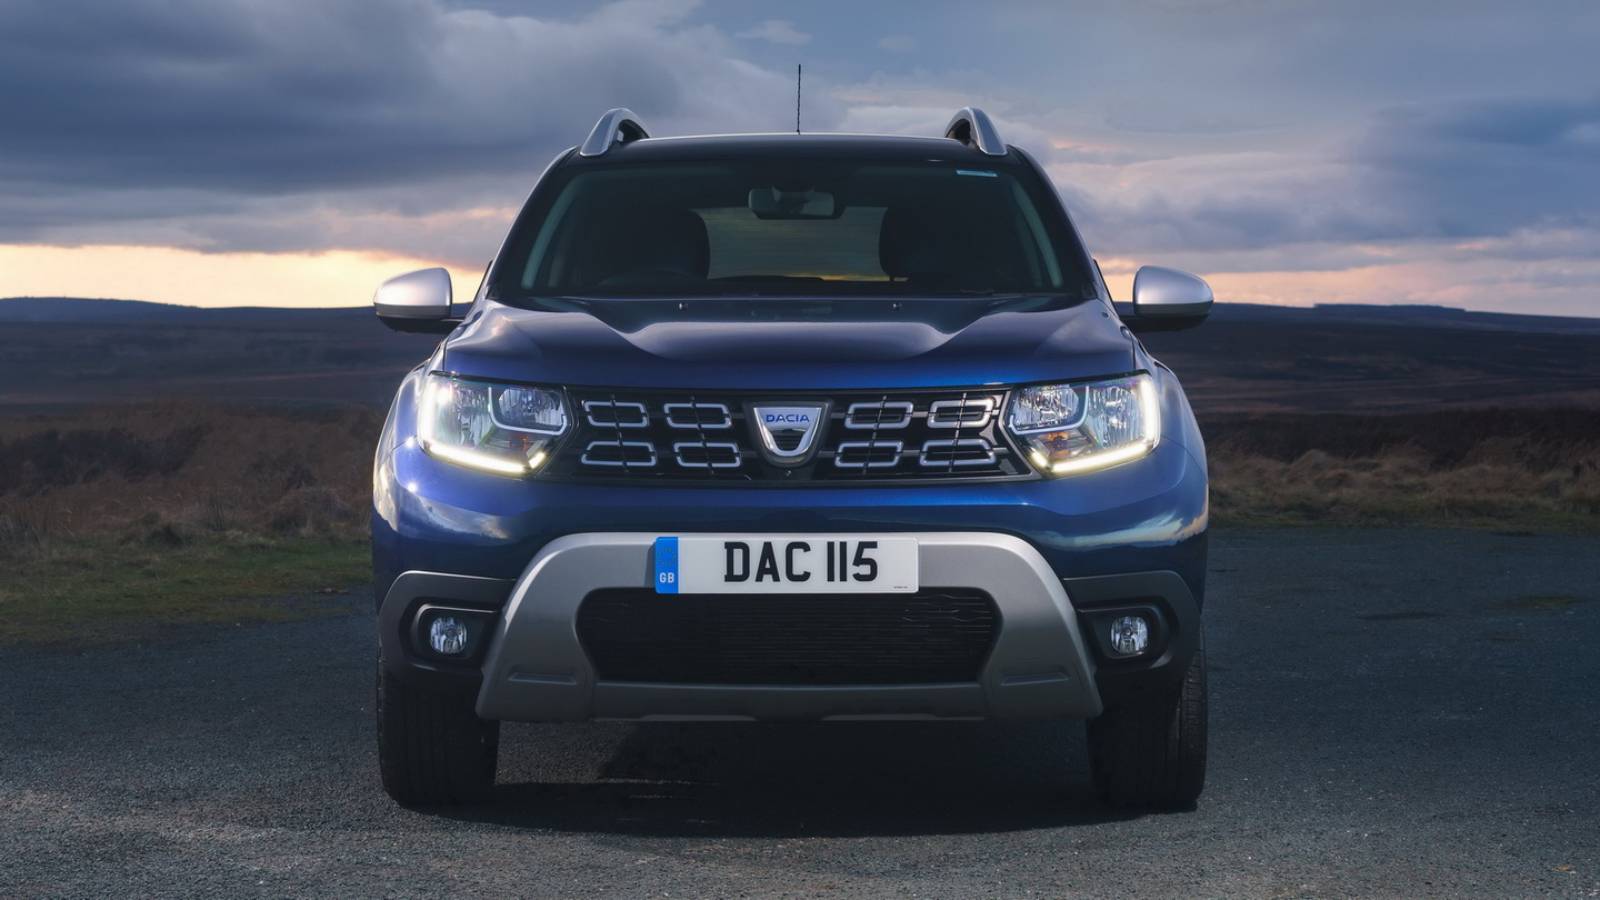 Dacia Duster Romania price LPG keyless go